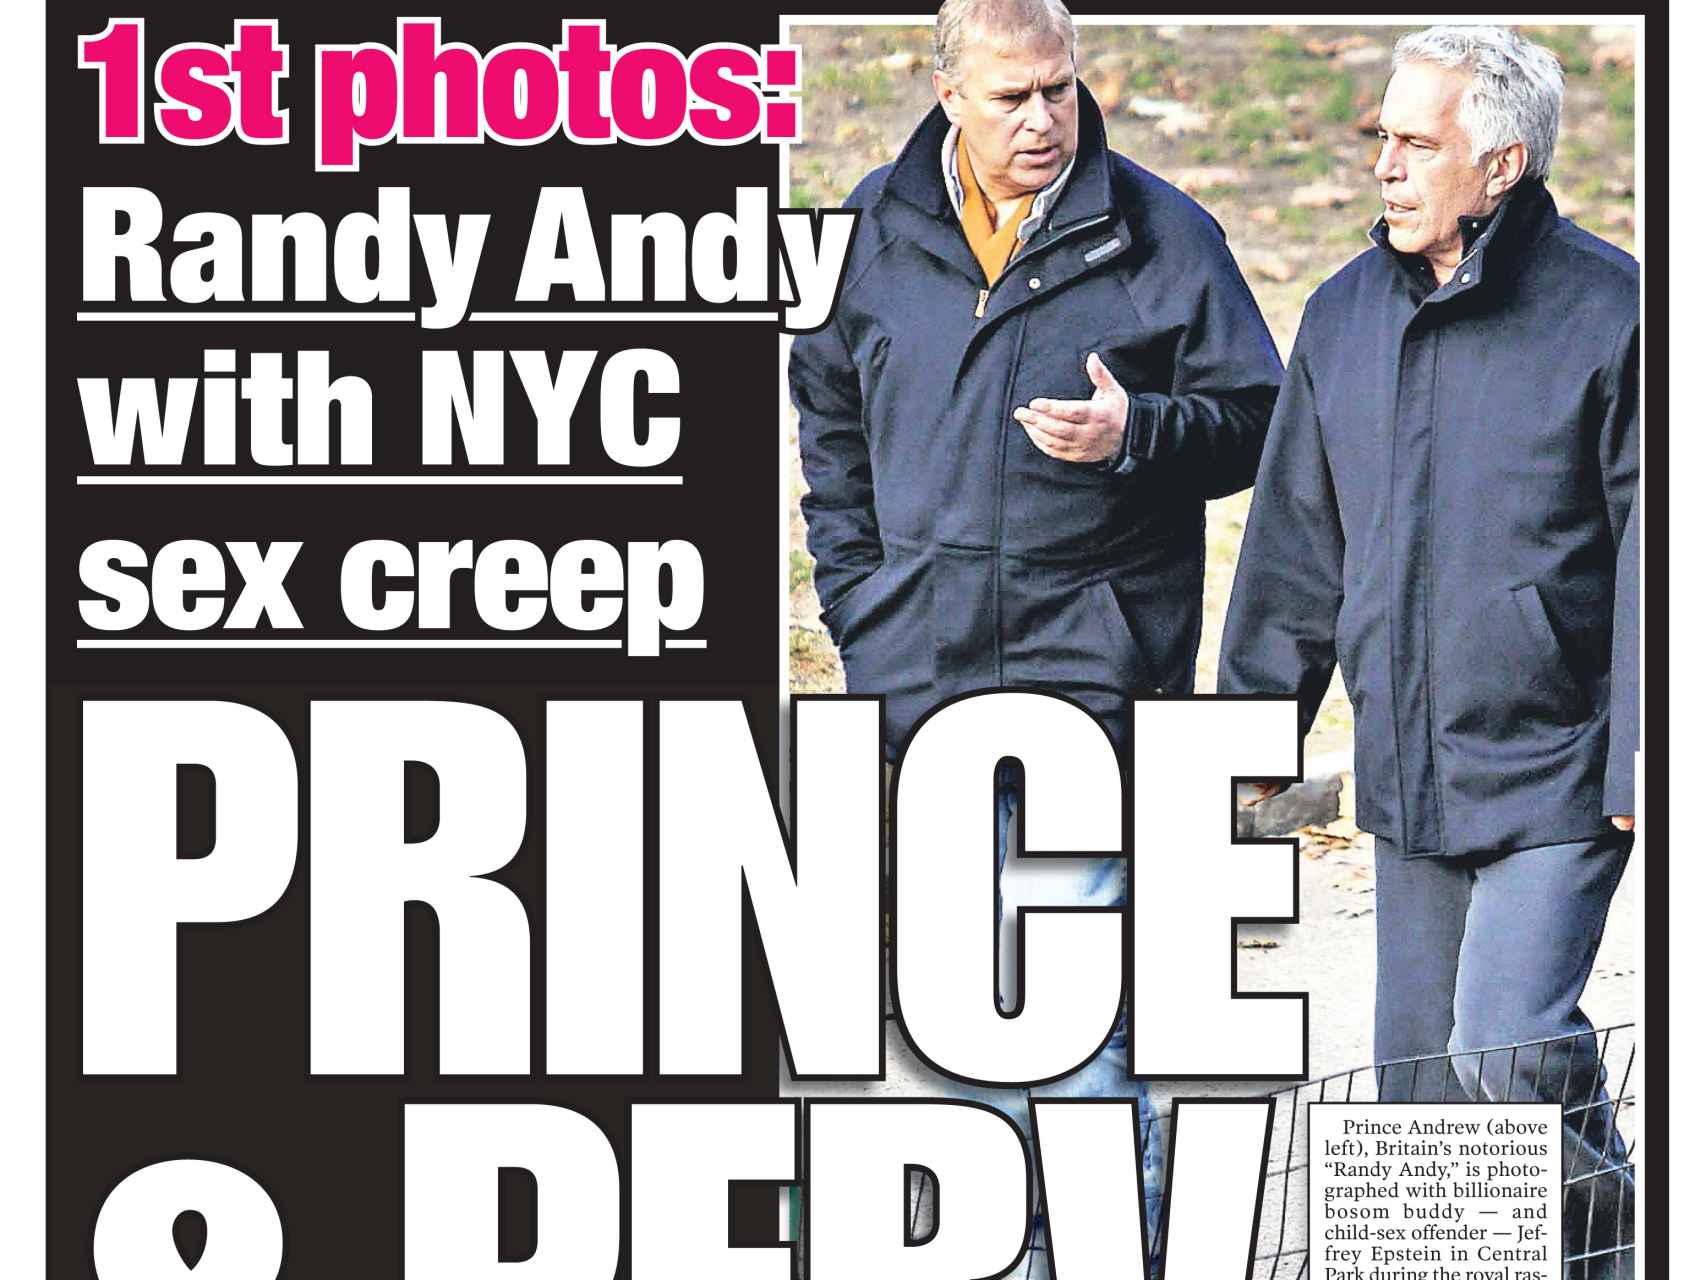 El príncipe Andrés y Jeffrey Epstein en la portada de 'New York Post' del 21 de febrero de 2011.